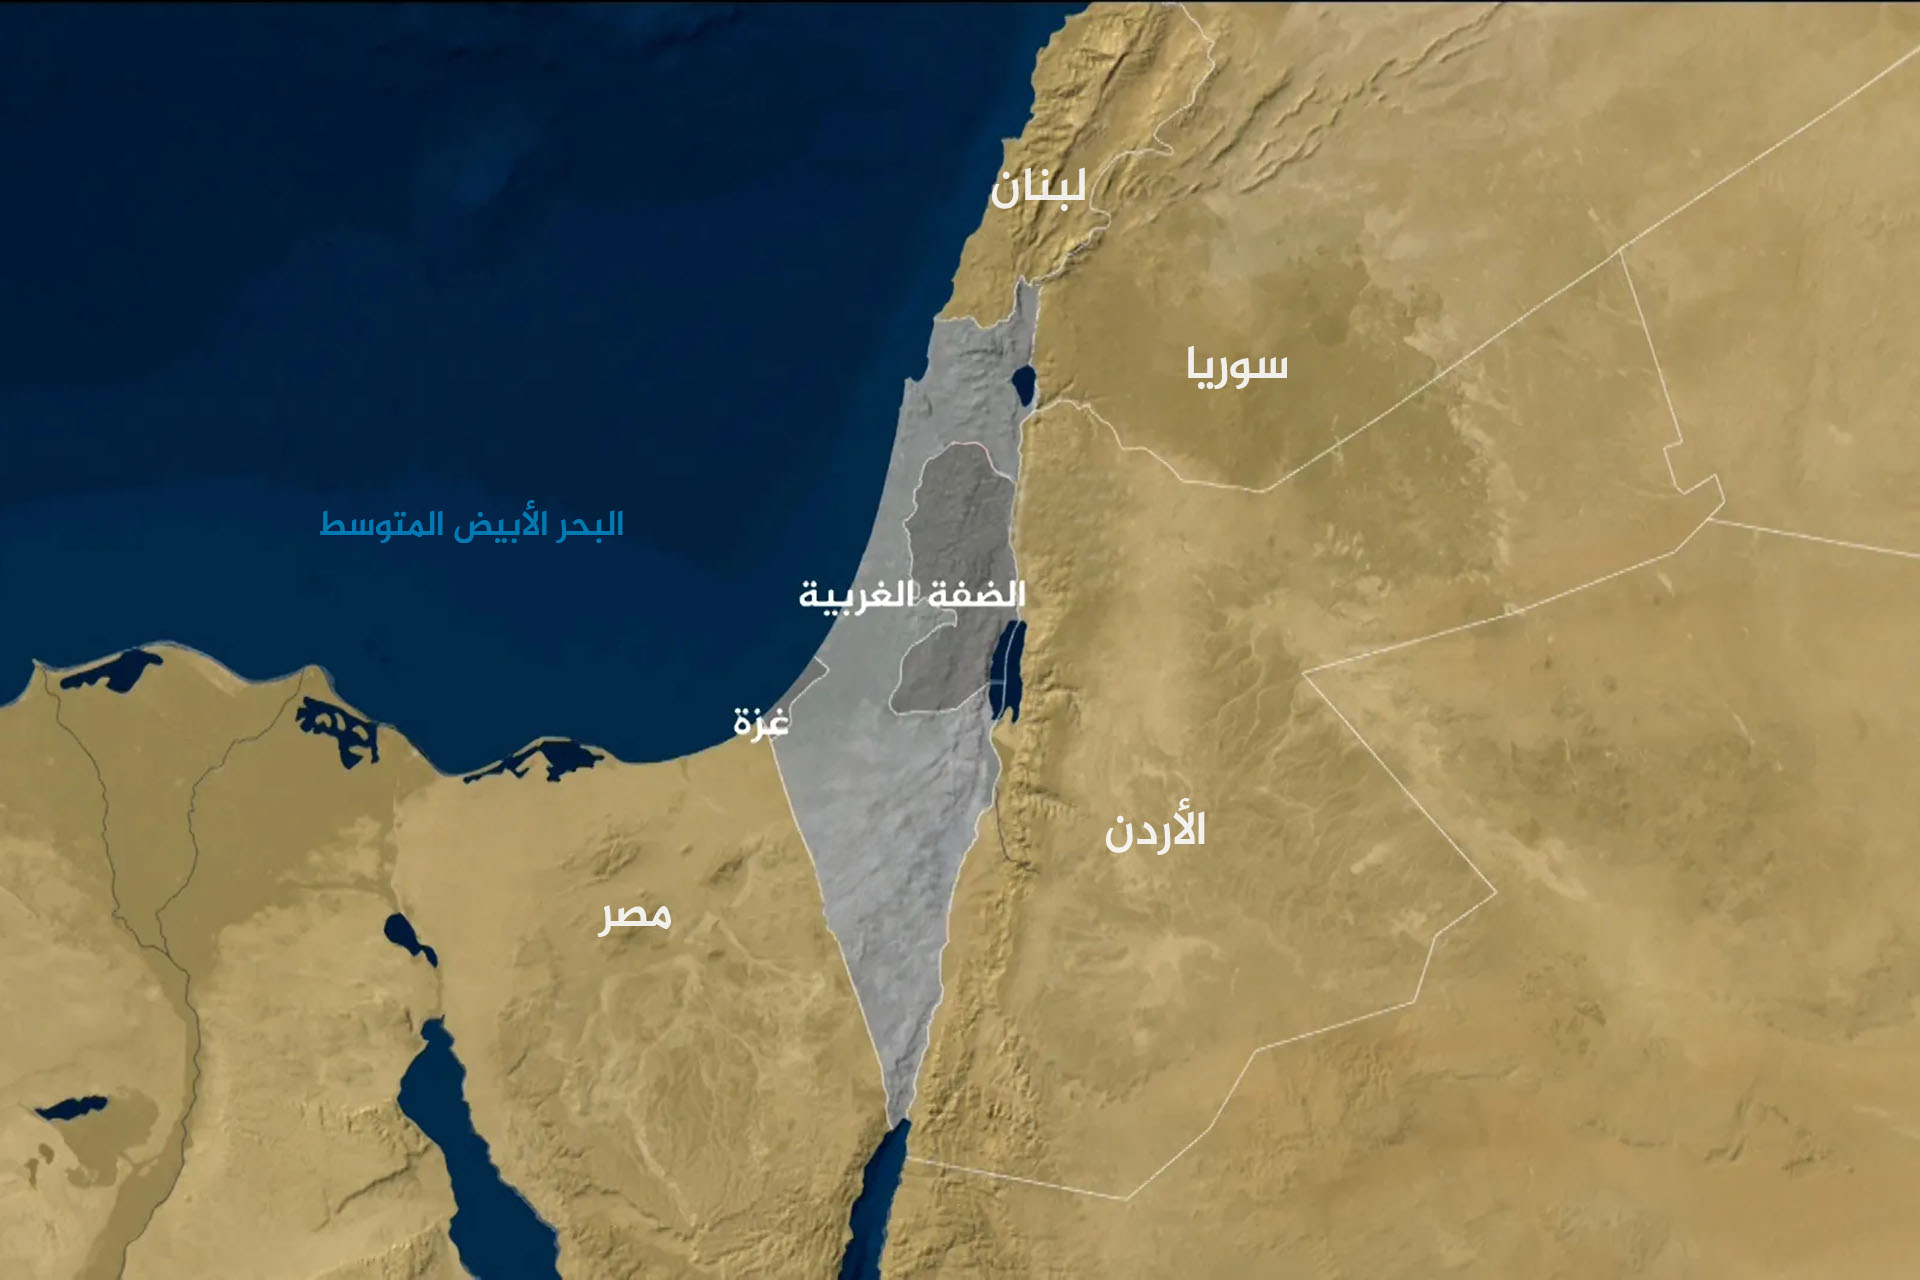 سطوة المكان.. الجغرافيا المتخيلة في الصراع العربي ـ الإسرائيلي | آراء – البوكس نيوز